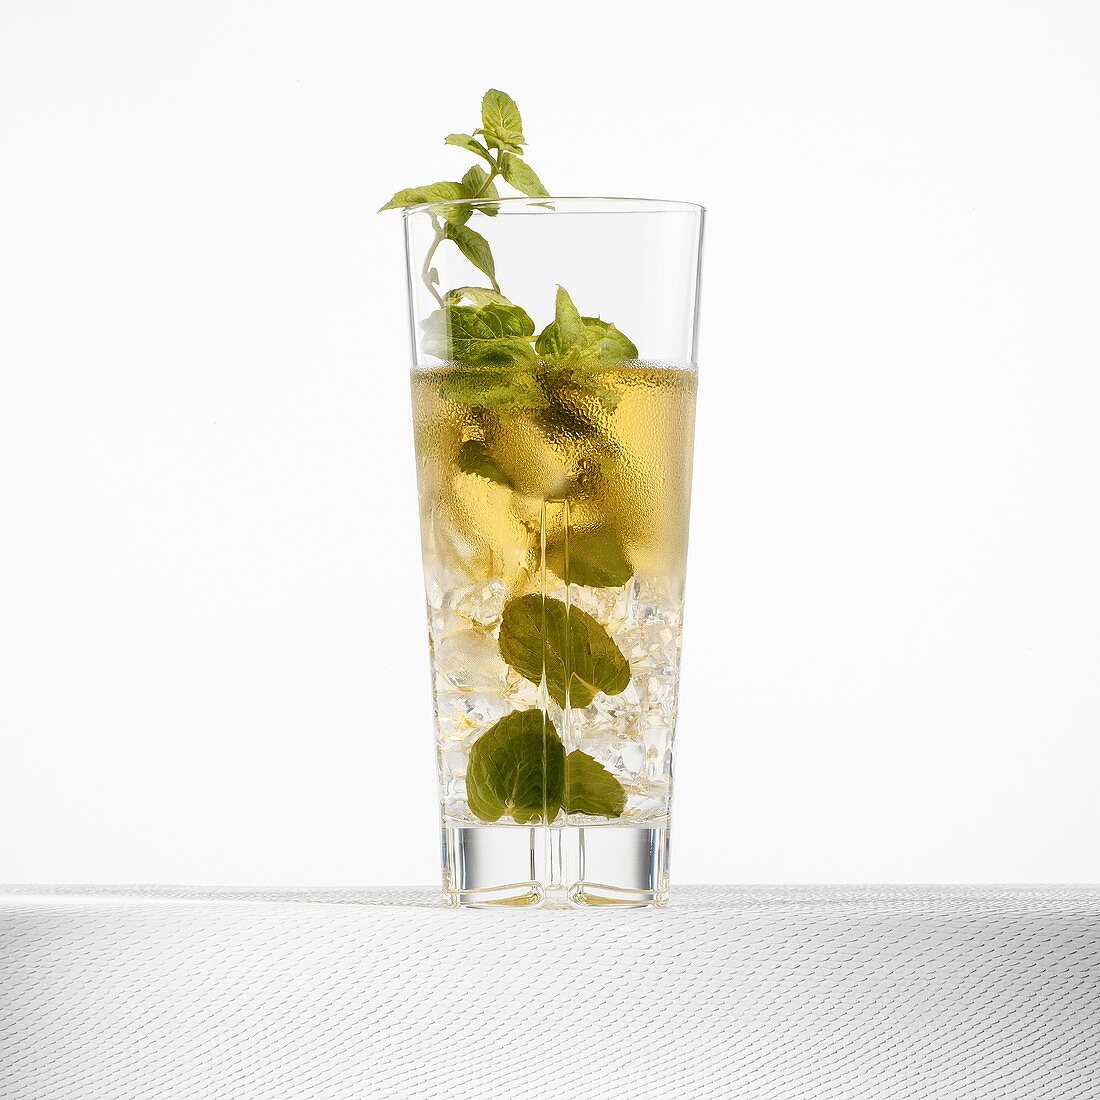 Mint cocktail